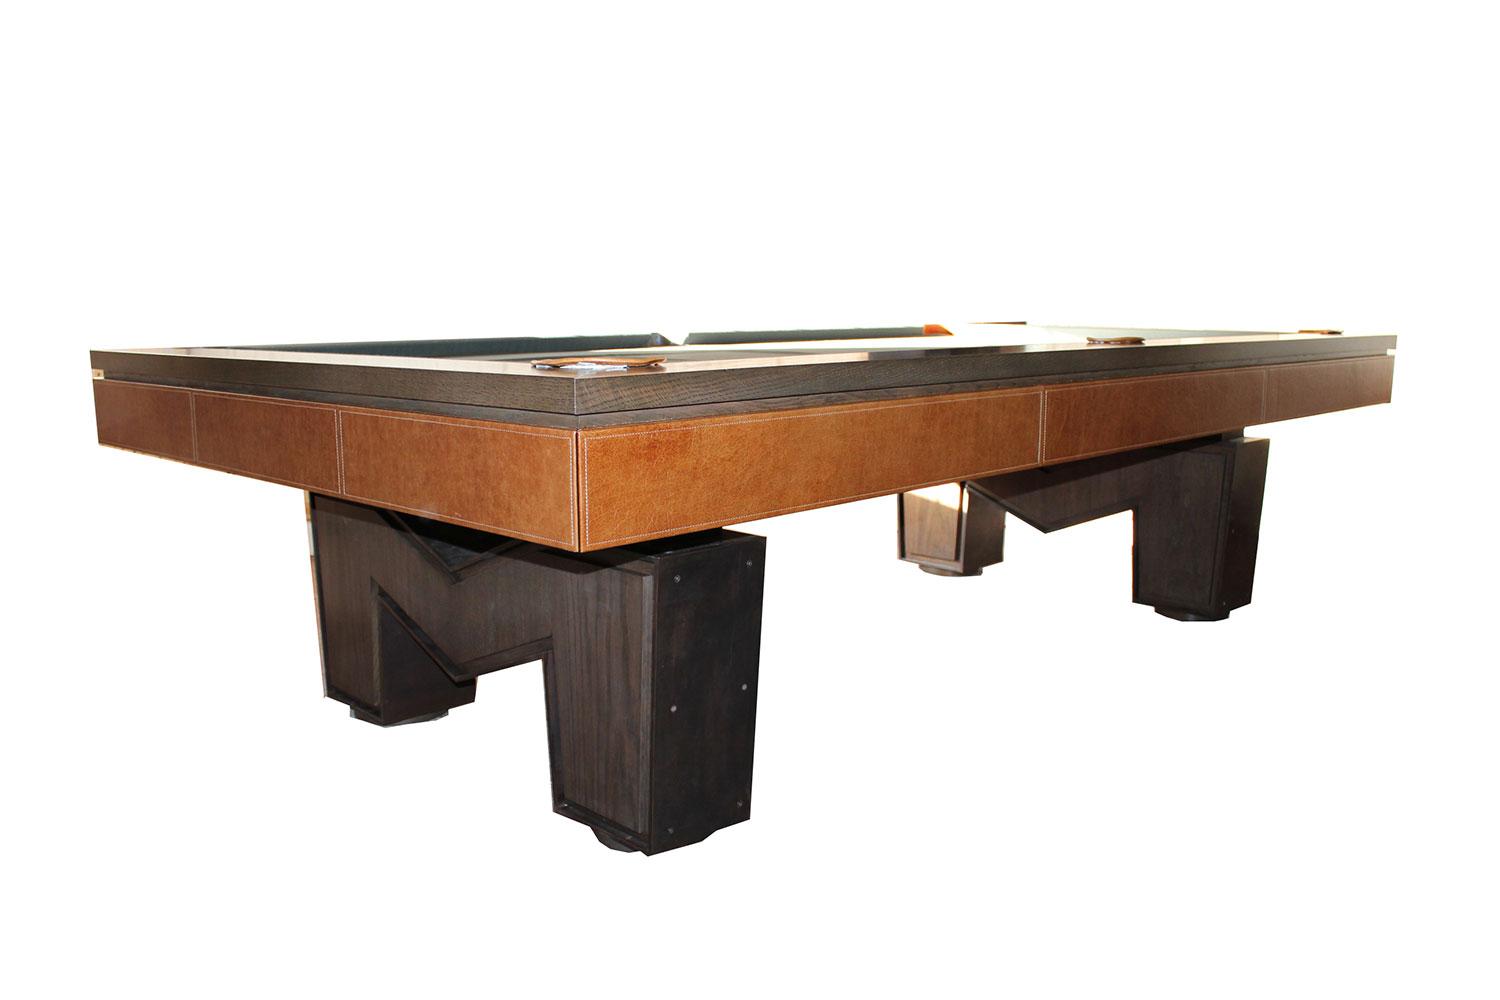 8ft Bespoke American Pool Table